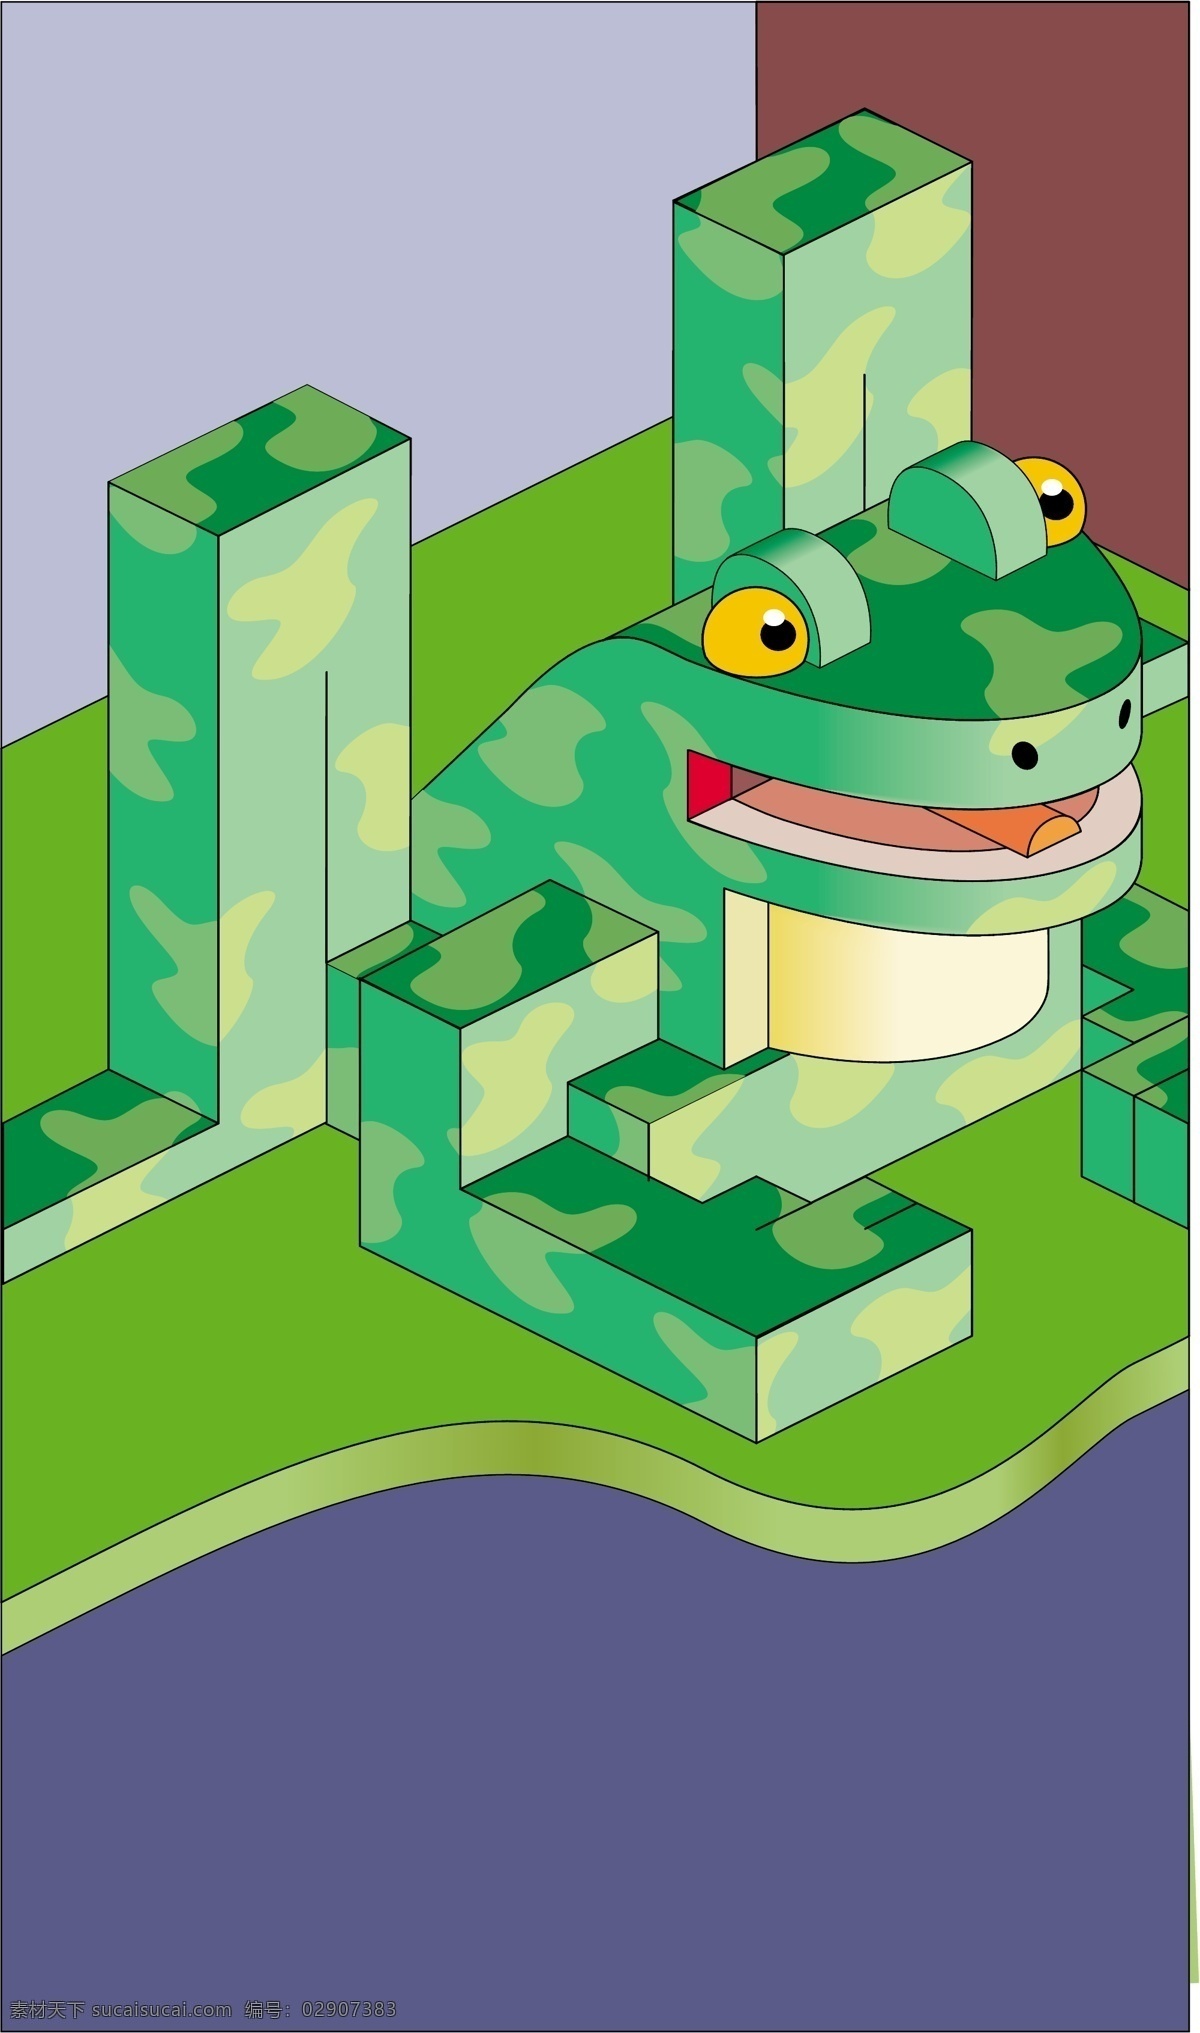 矢量 青蛙 设计素材 青蛙设计 机器青蛙 儿童插画 插画背景 矢量背景 卡通背景 艺术背景 抽象背景 矢量素材 生活百科 绿色